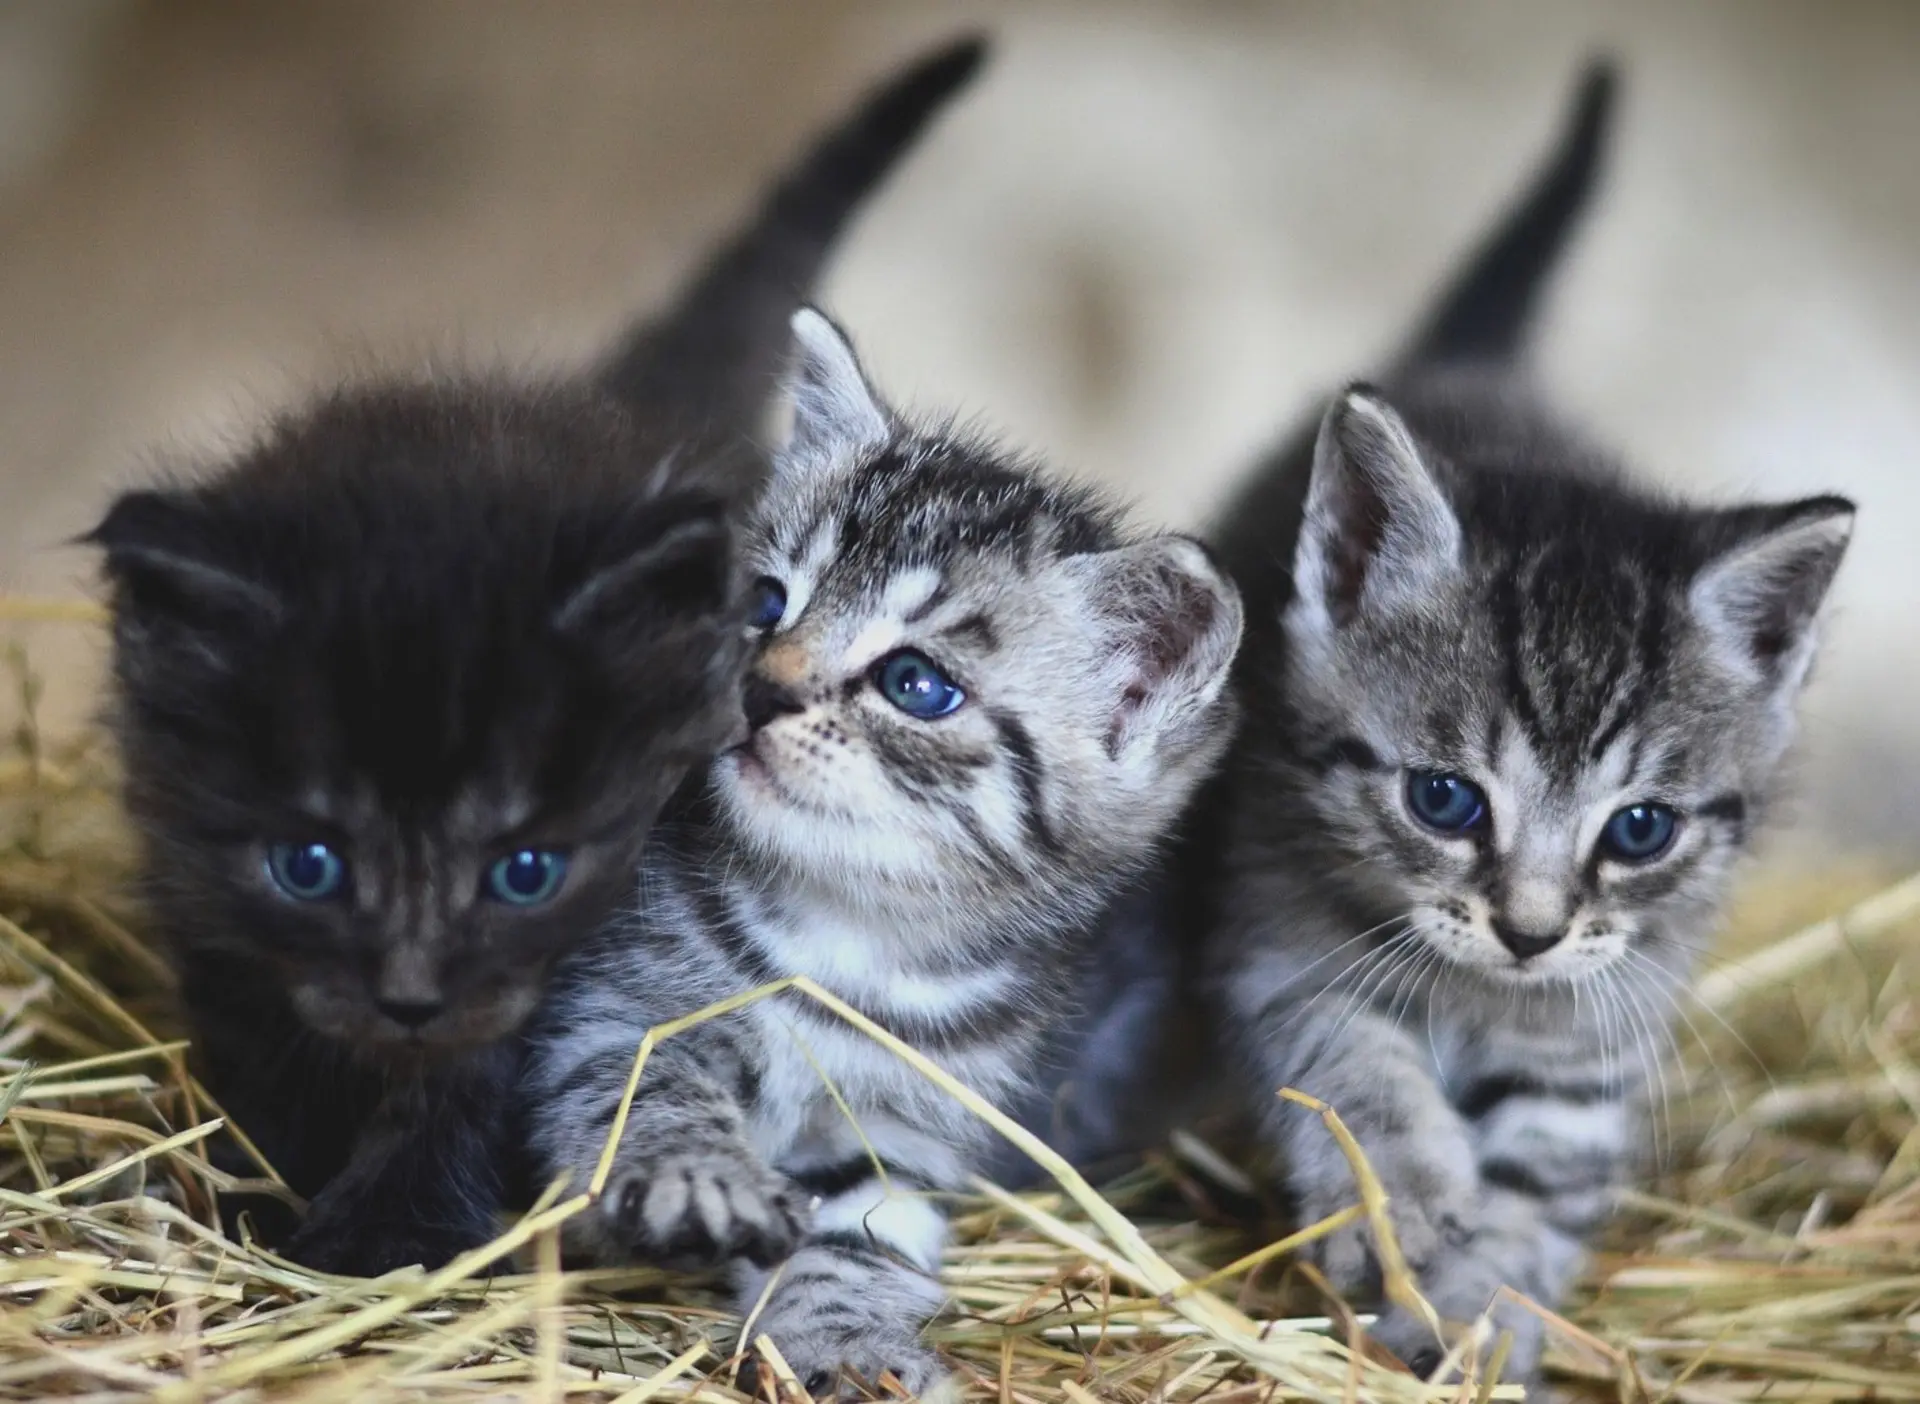 Image of Kittens